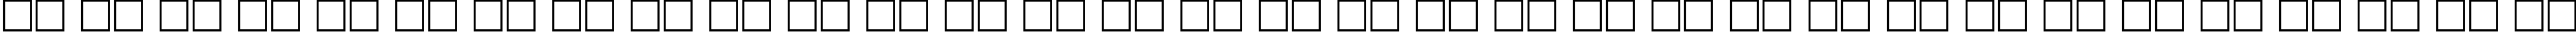 Пример написания русского алфавита шрифтом CompactBook